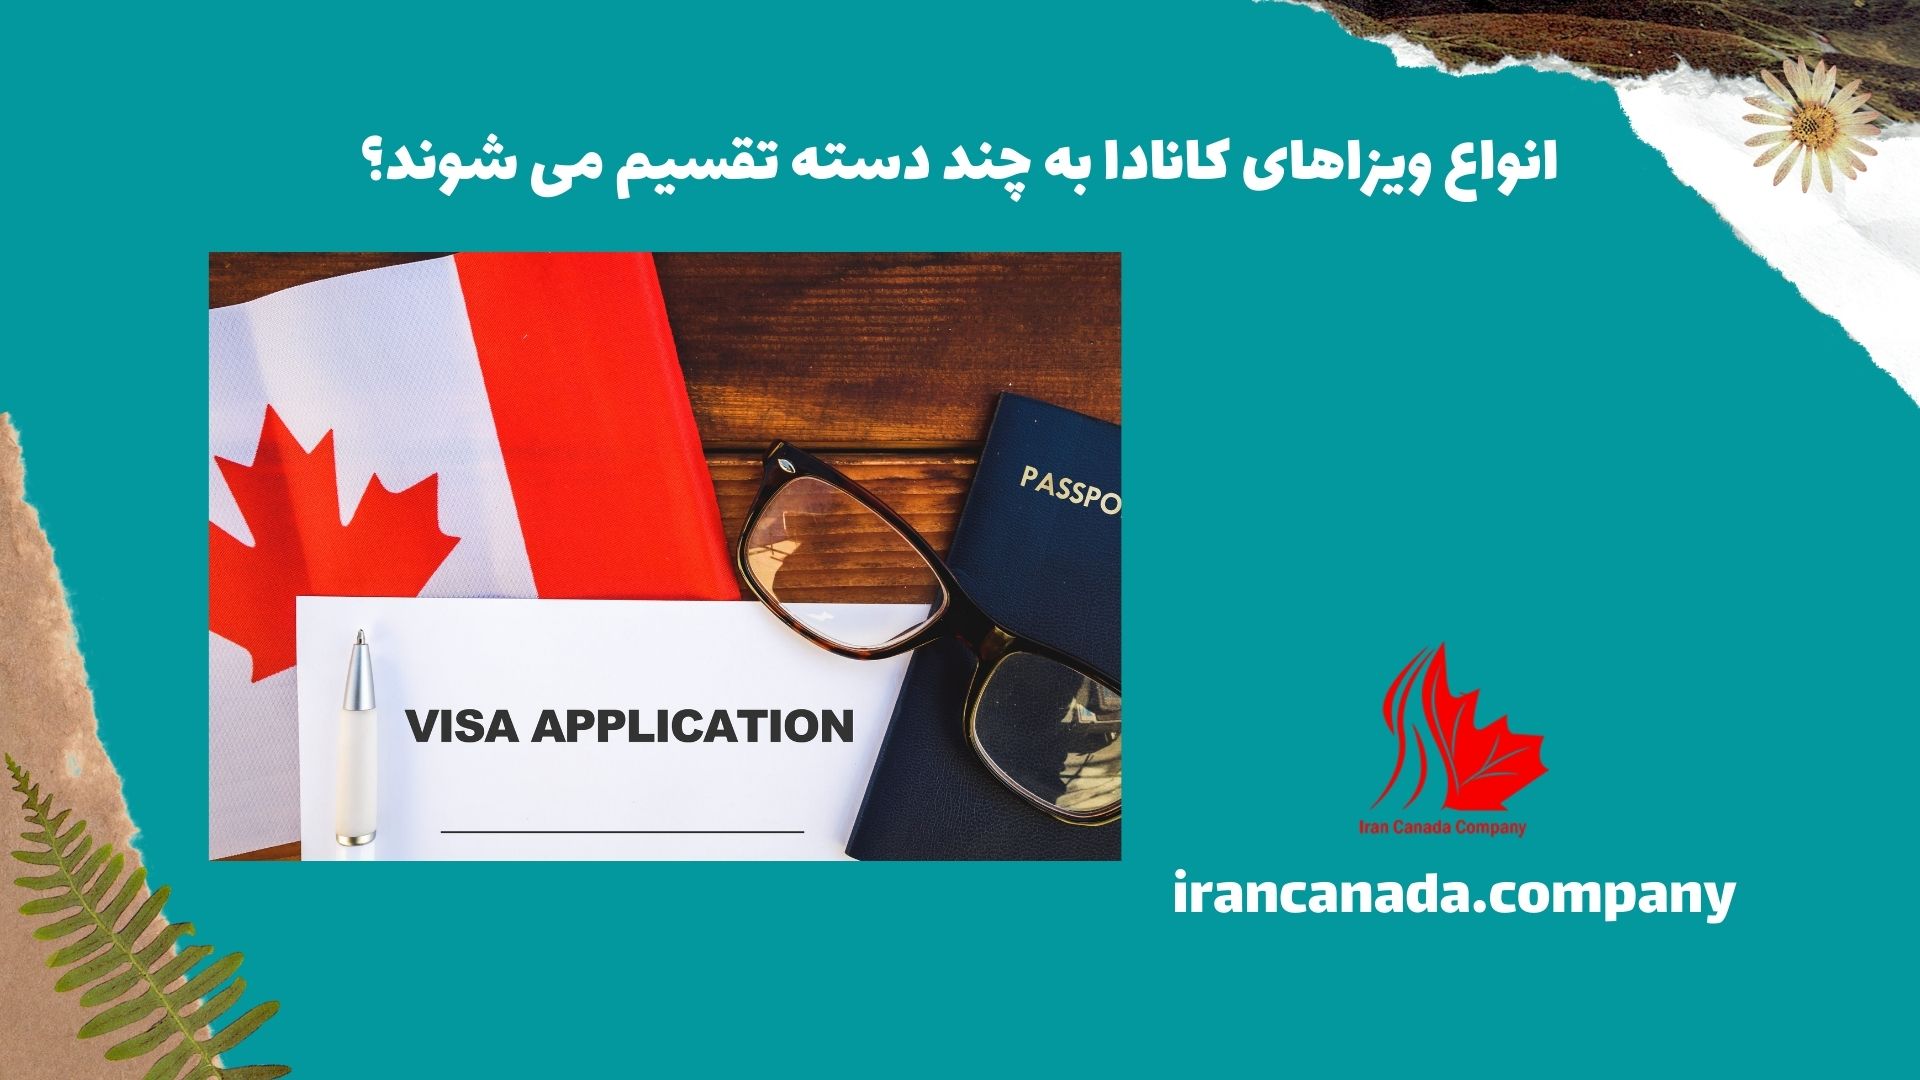 انواع ویزاهای کانادا به چند دسته تقسیم می شوند؟